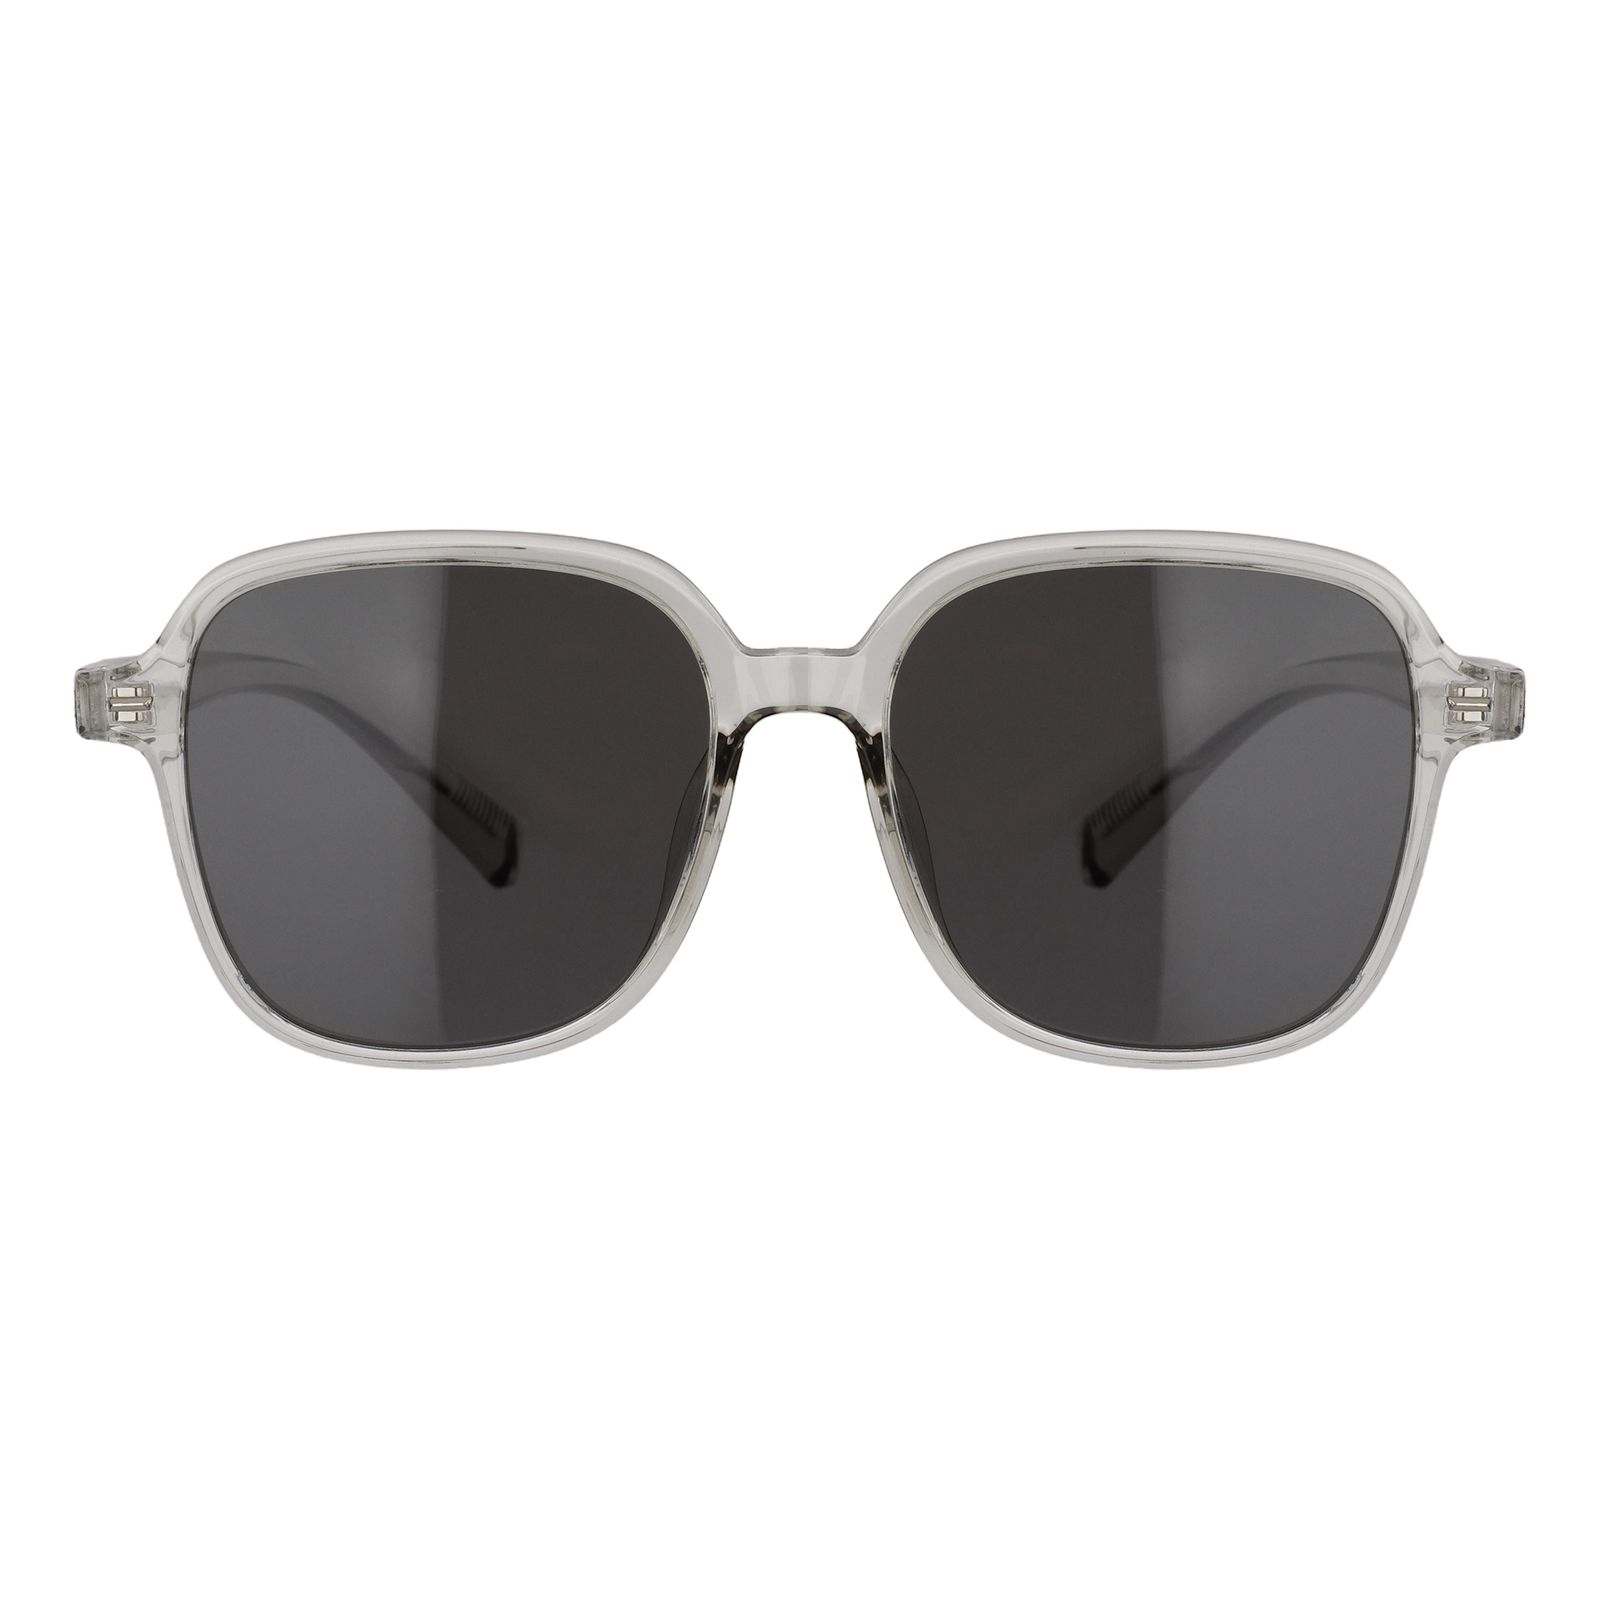 عینک آفتابی مانگو مدل 14020730201 -  - 1